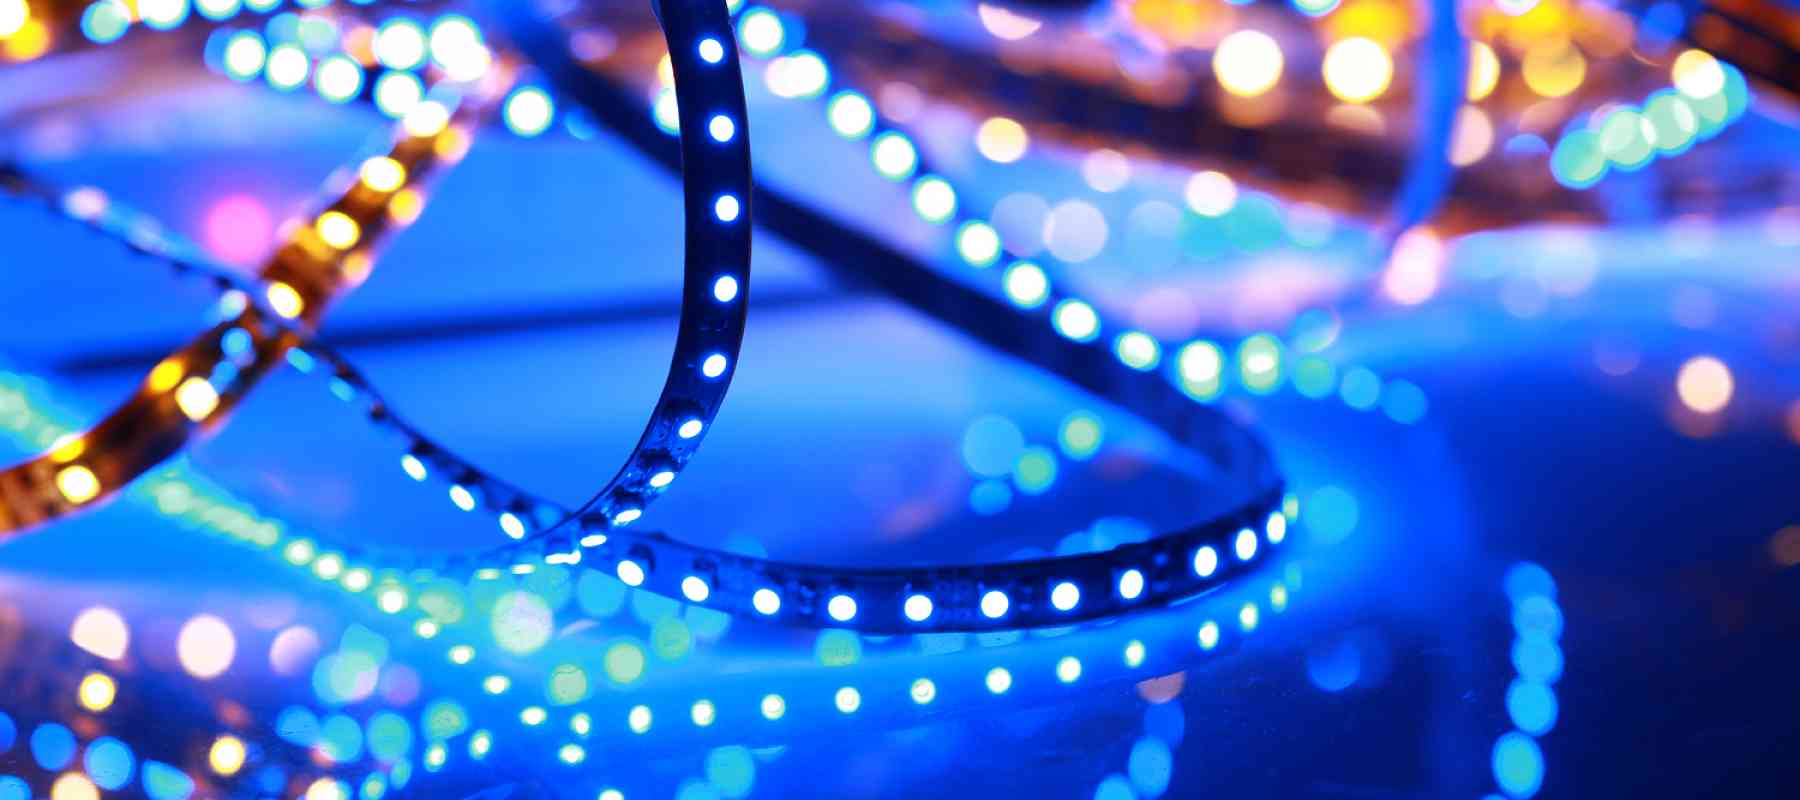 Understanding How LED Lighting Works